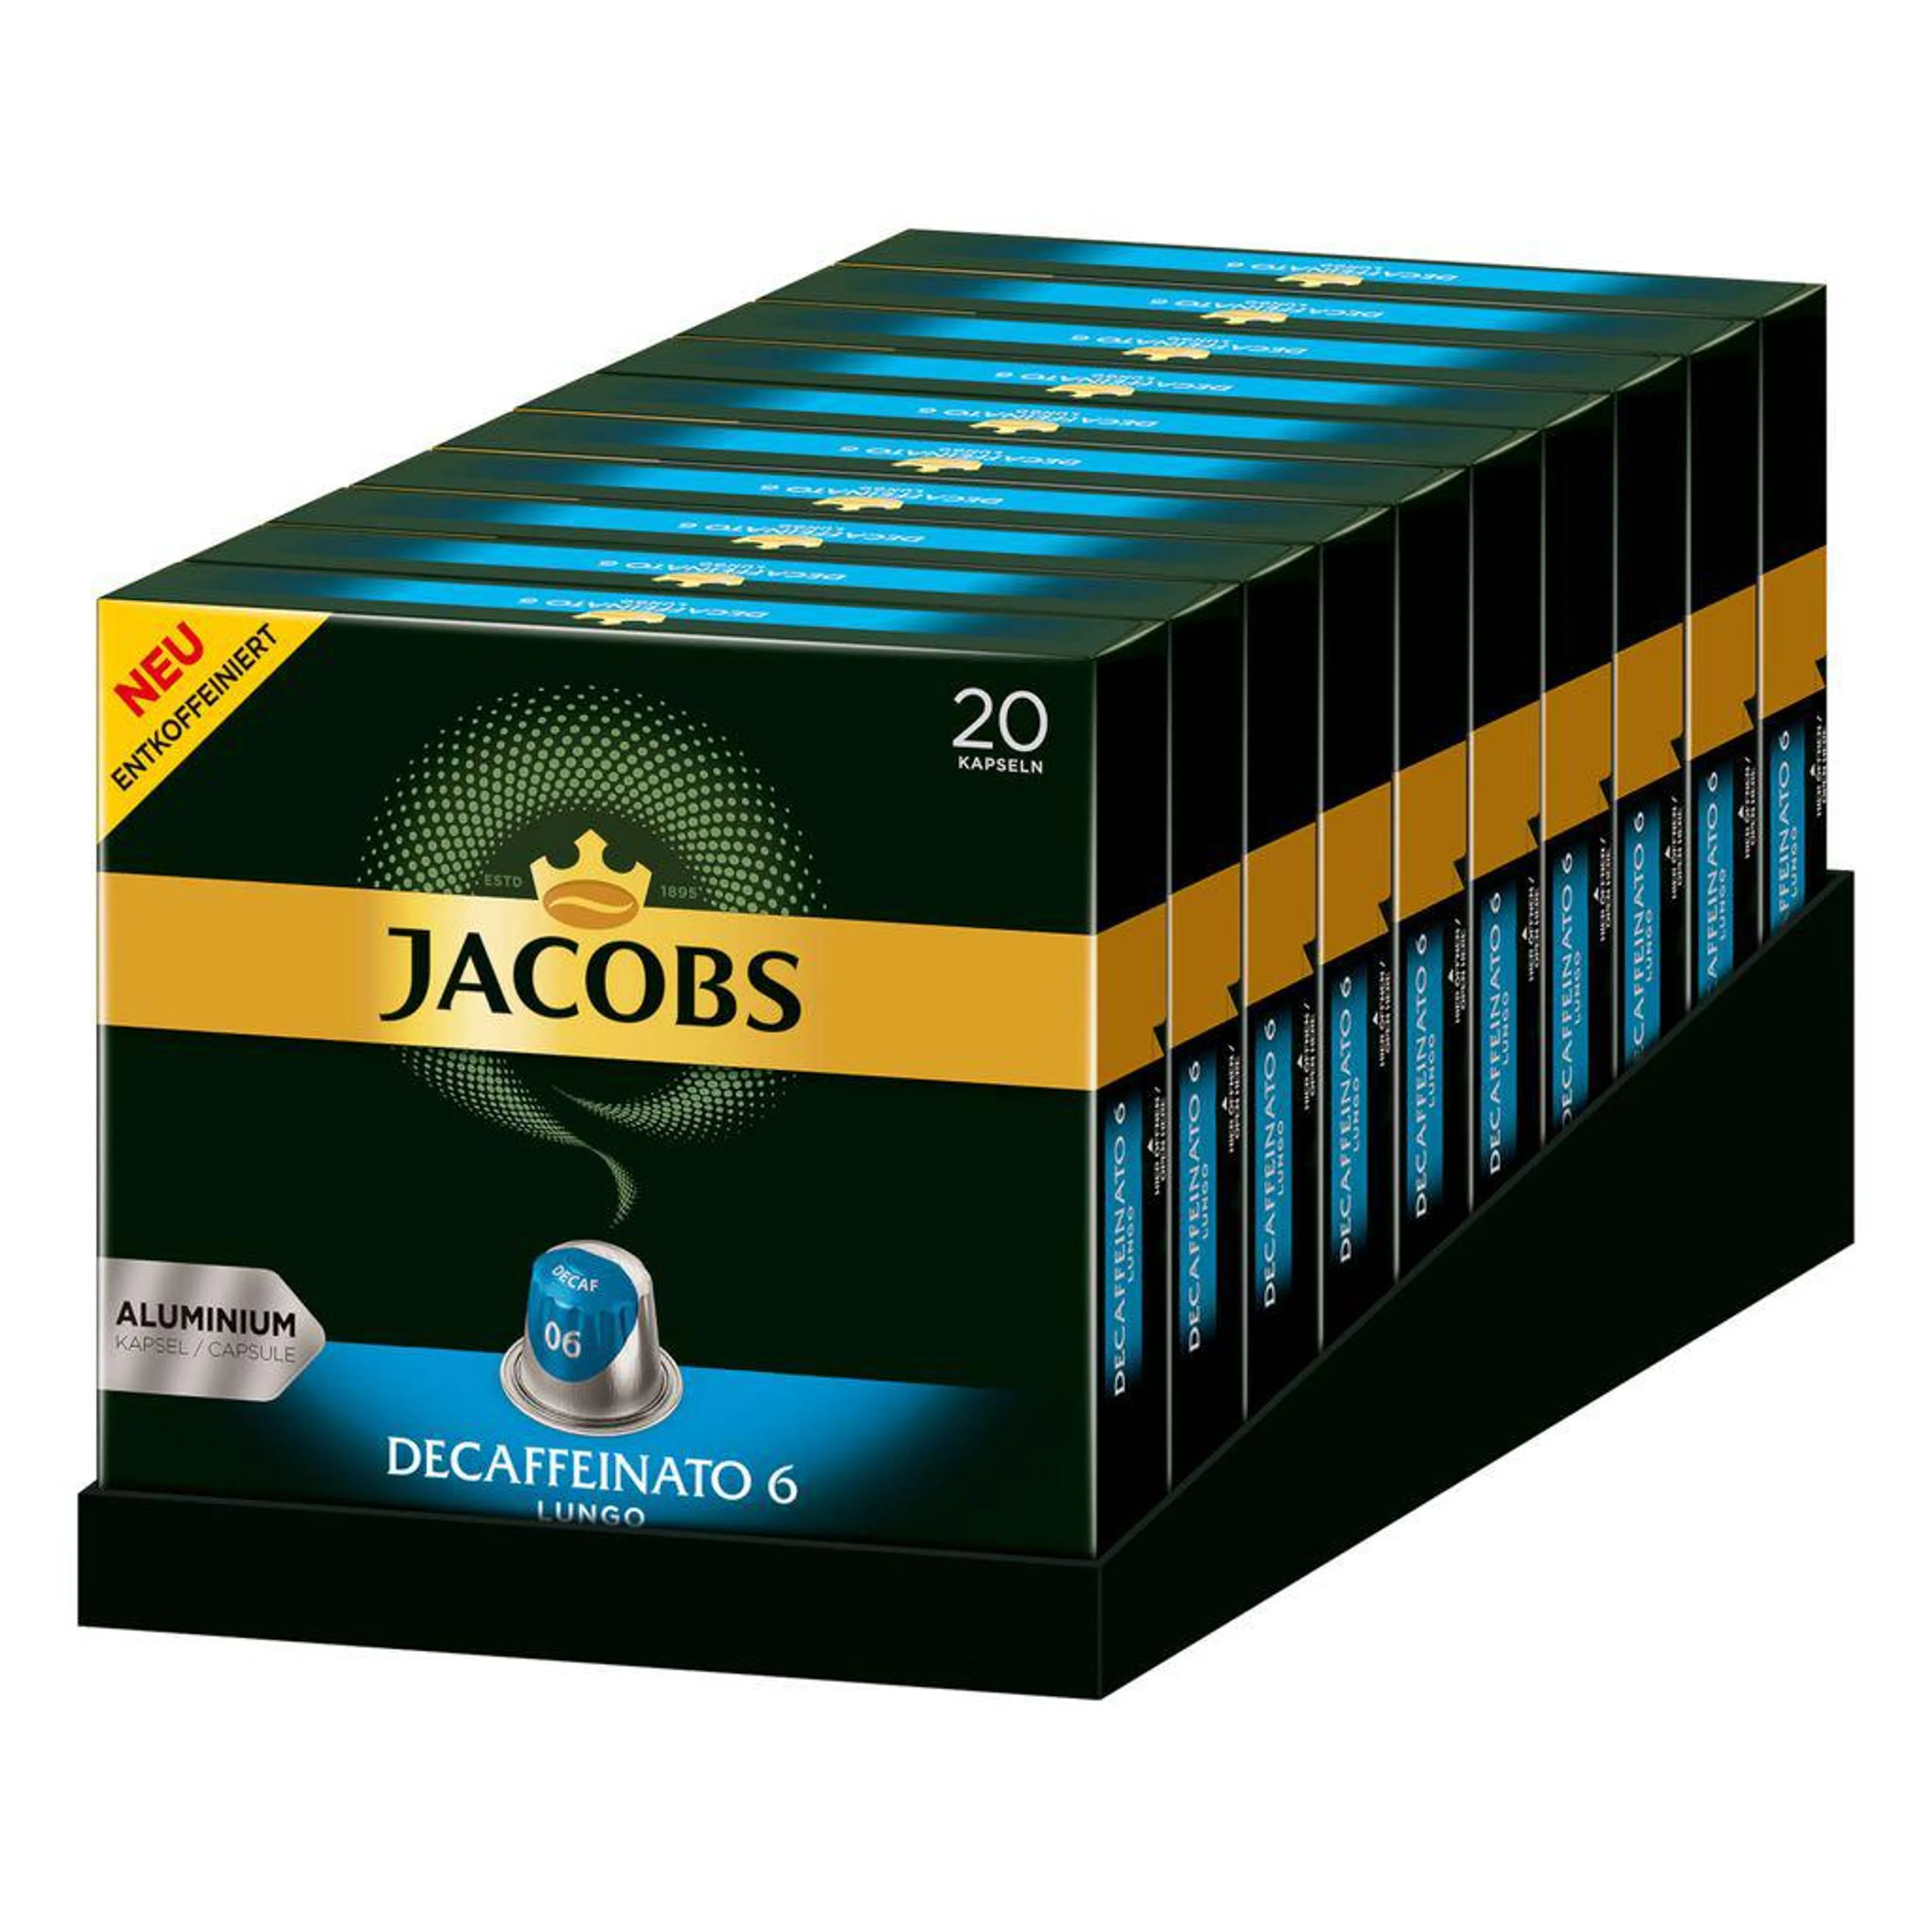 JACOBS Kapseln Decaffeinato 6 Lungo entkoffeiniert 200 Nespresso®* kompatibel